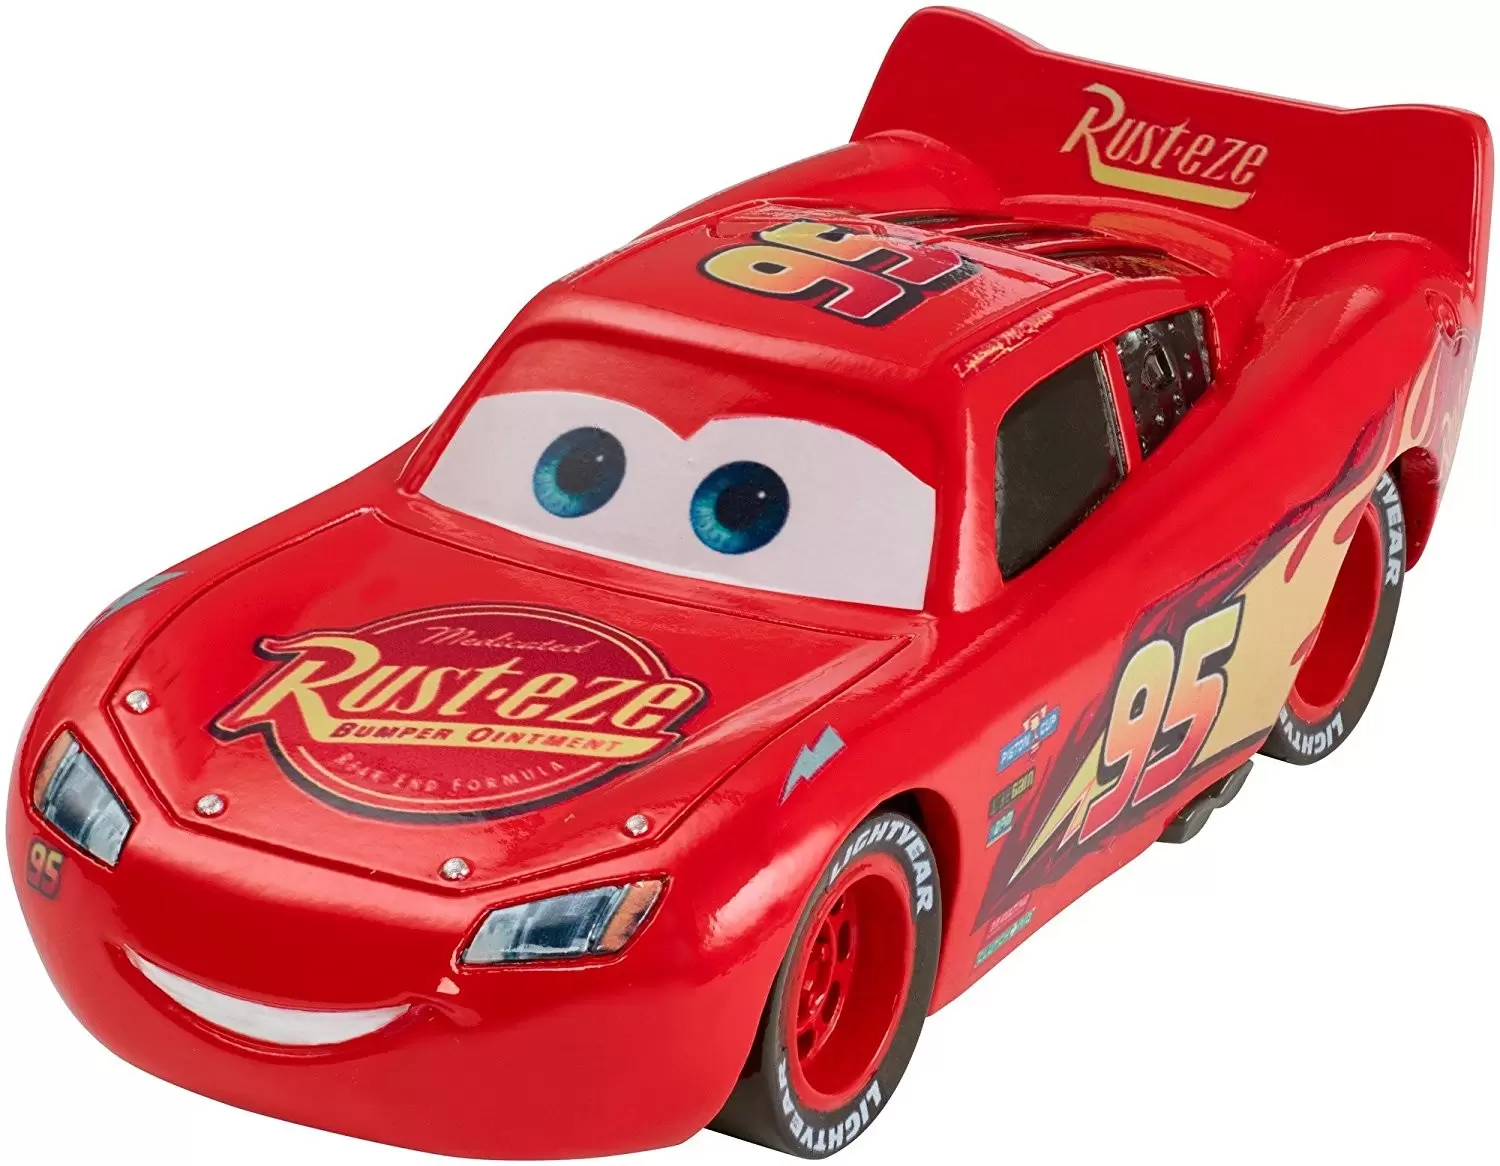 Cars 3 models - Lightning McQueen